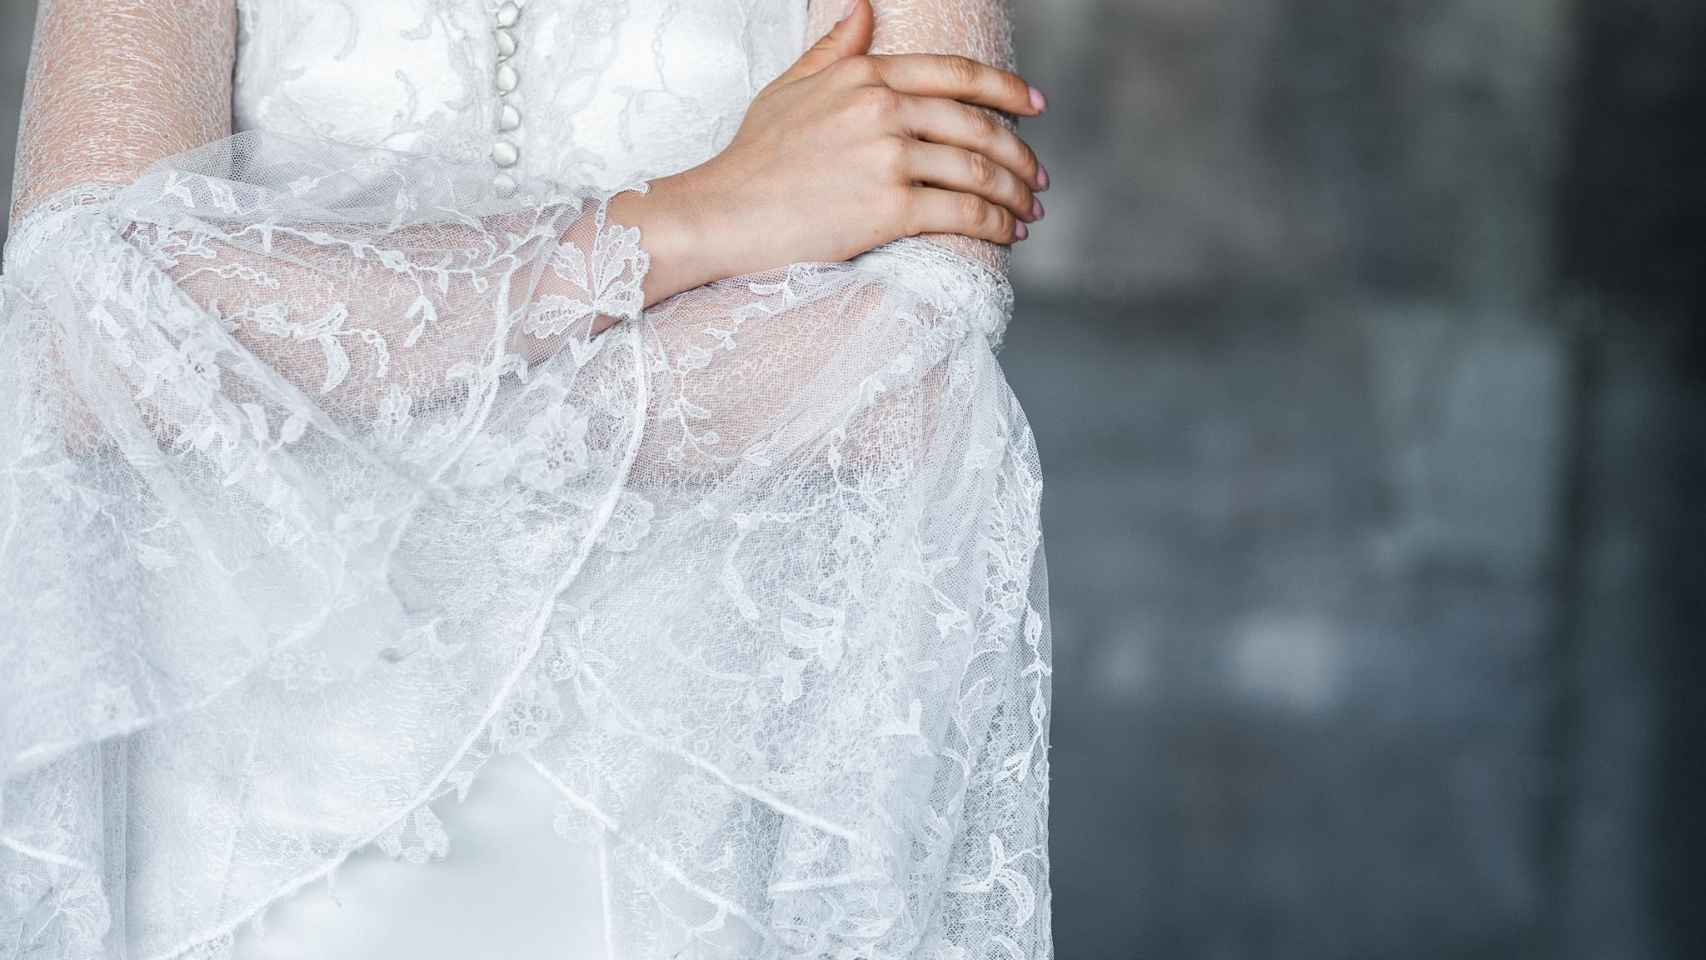 Los tejidos de los vestidos son reciclados y en su mayor parte proceden de fibras naturales.